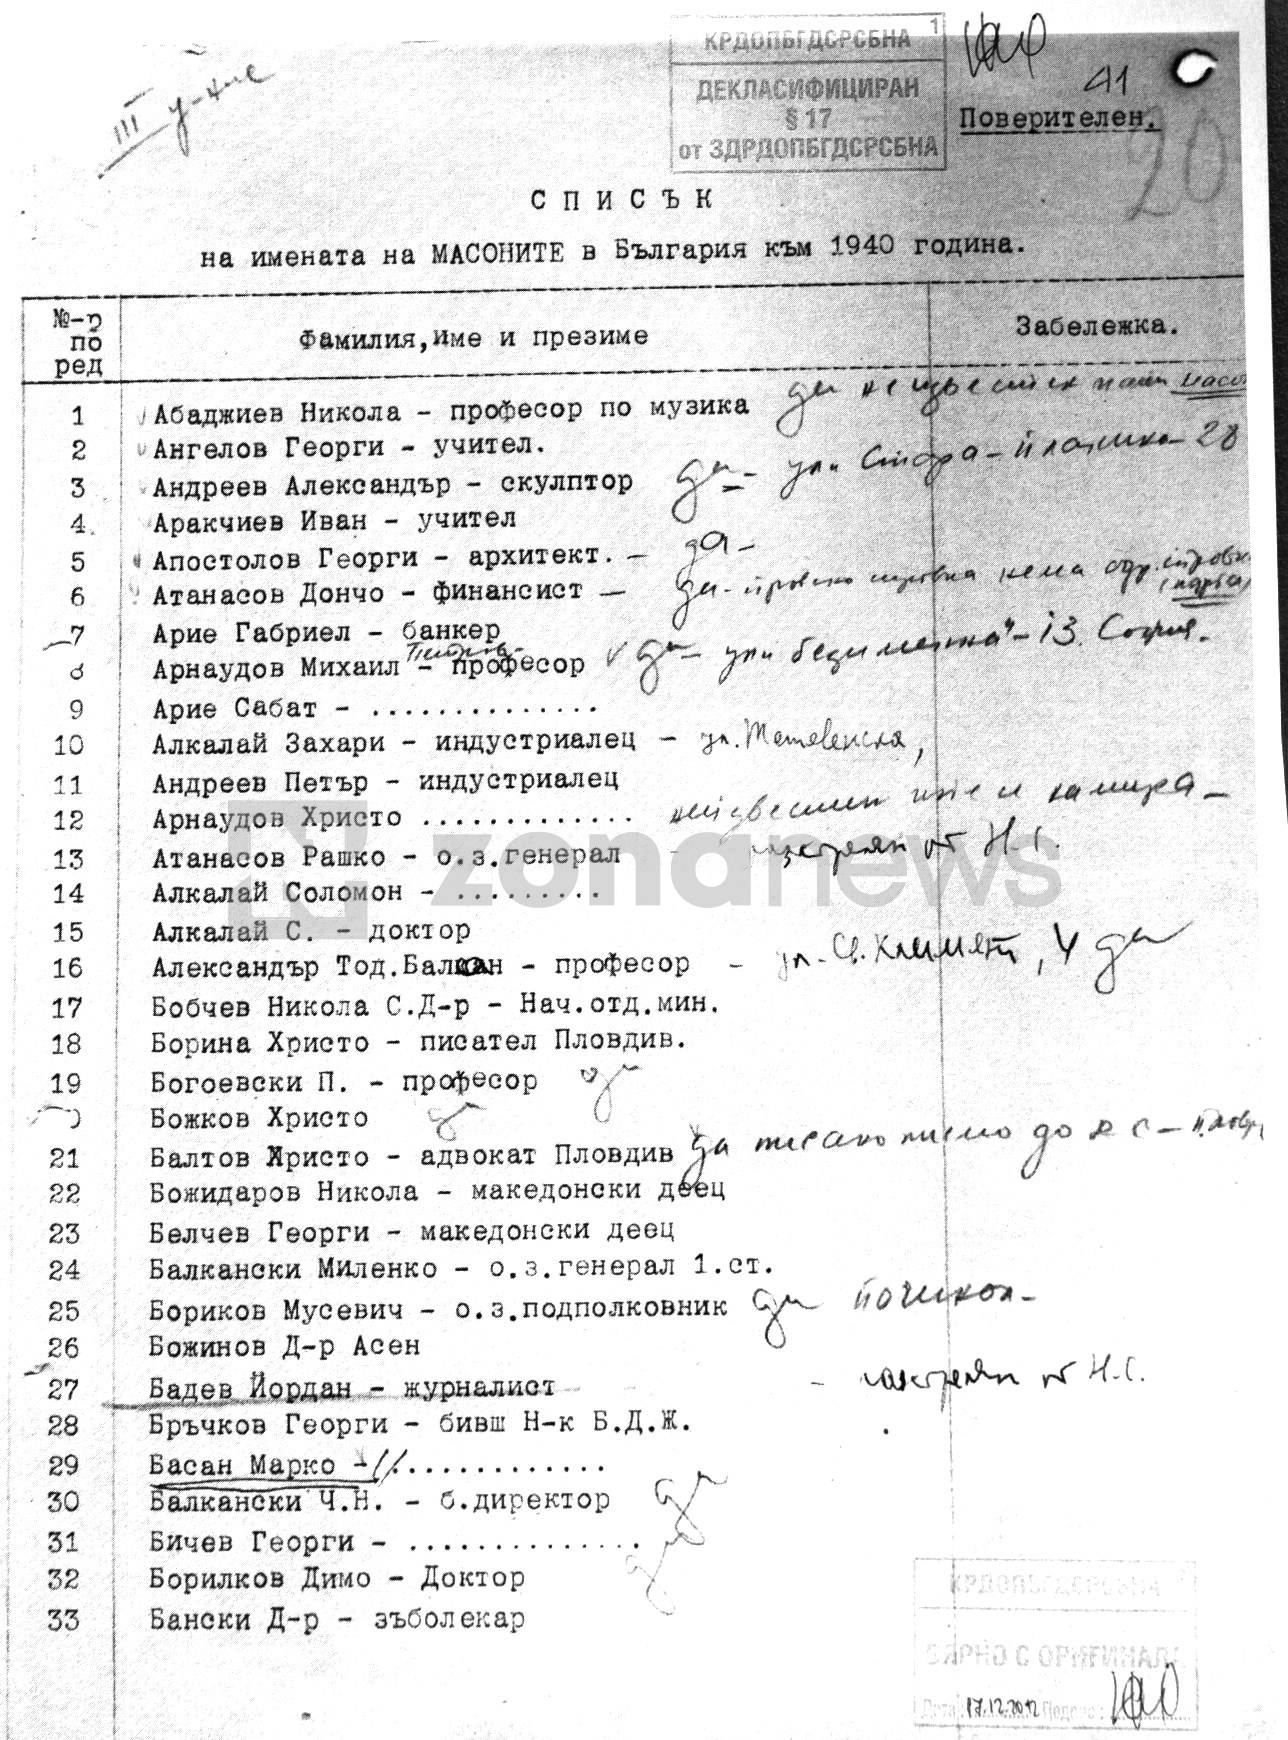 Документи от архива на КОМДОС за българското масонство (4)